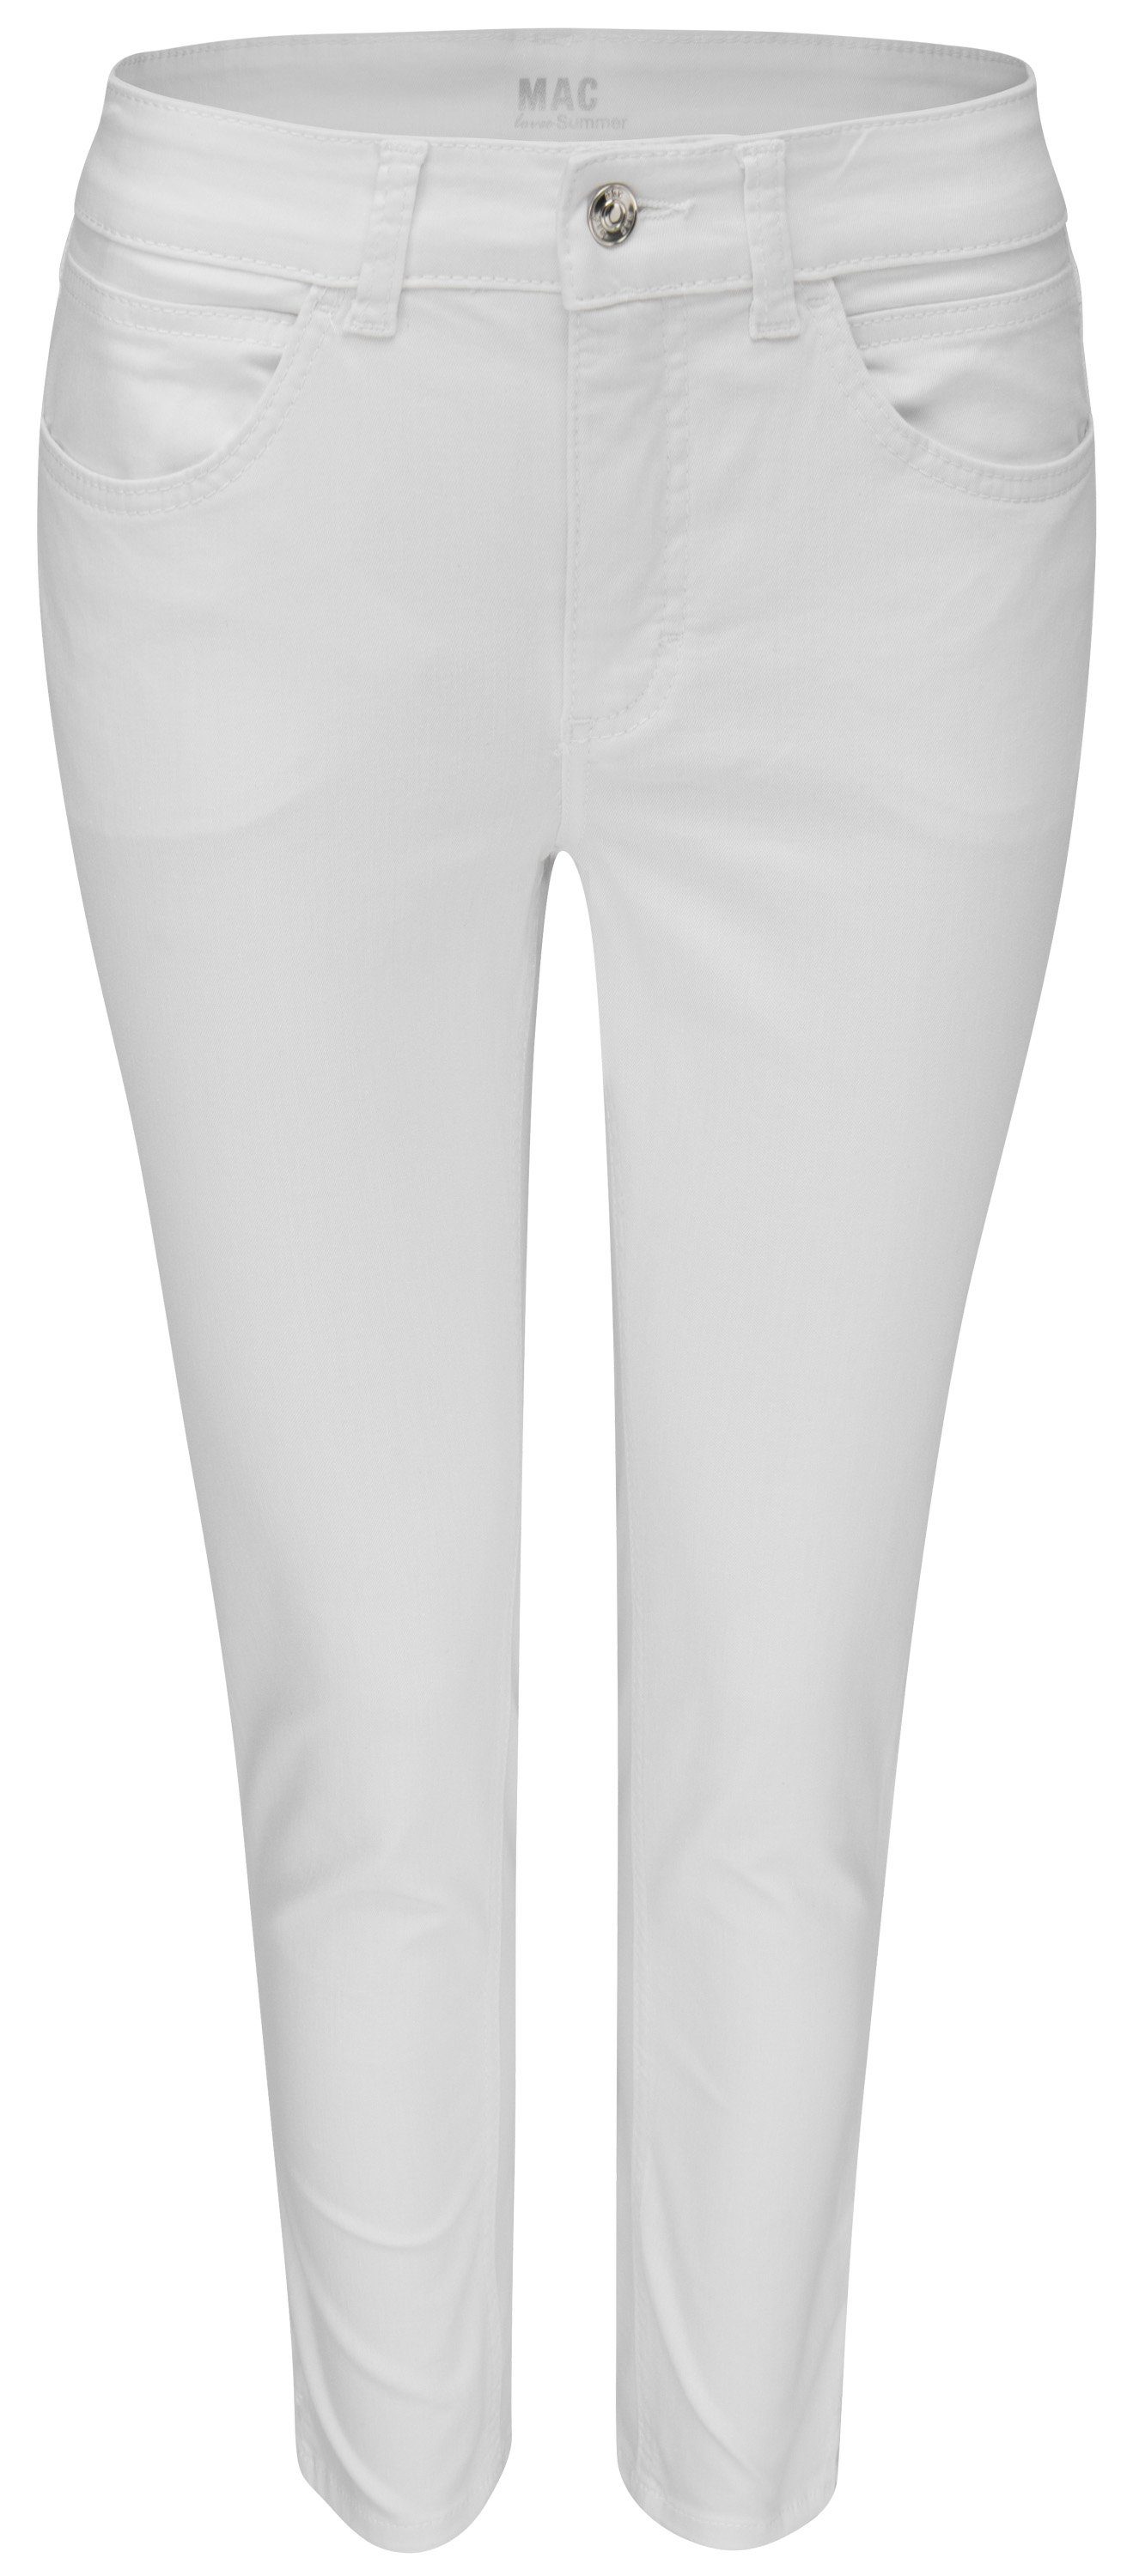 5260-90-0394 white SUMMER Stretch-Jeans 7/8 denim ANGELA nature MAC MAC D010